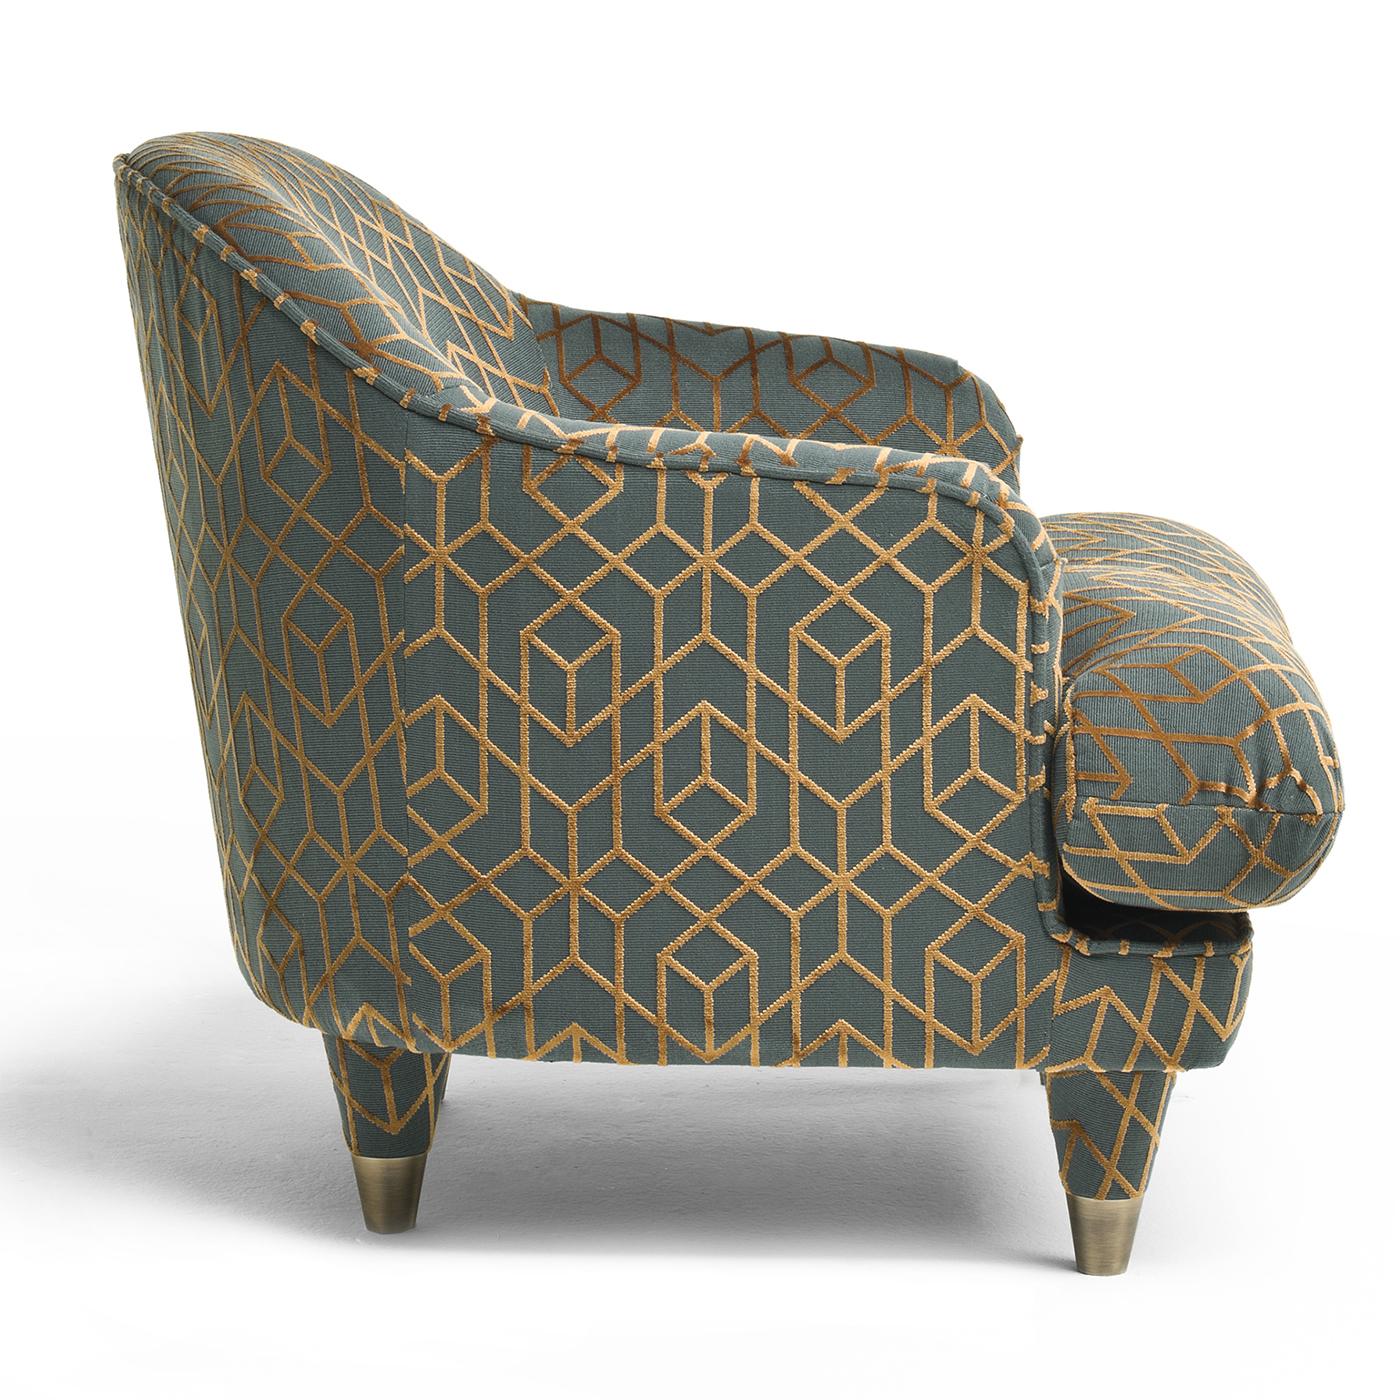 Der Century Club Armchair ist ein schickes, modernes Modell eines echten Klassikers, das für puren Komfort konzipiert wurde. Der Sessel in stimmungsvollem Grün mit geometrischem Kupferdruck zeichnet sich durch ein großes Sitzkissen aus, das zu einer